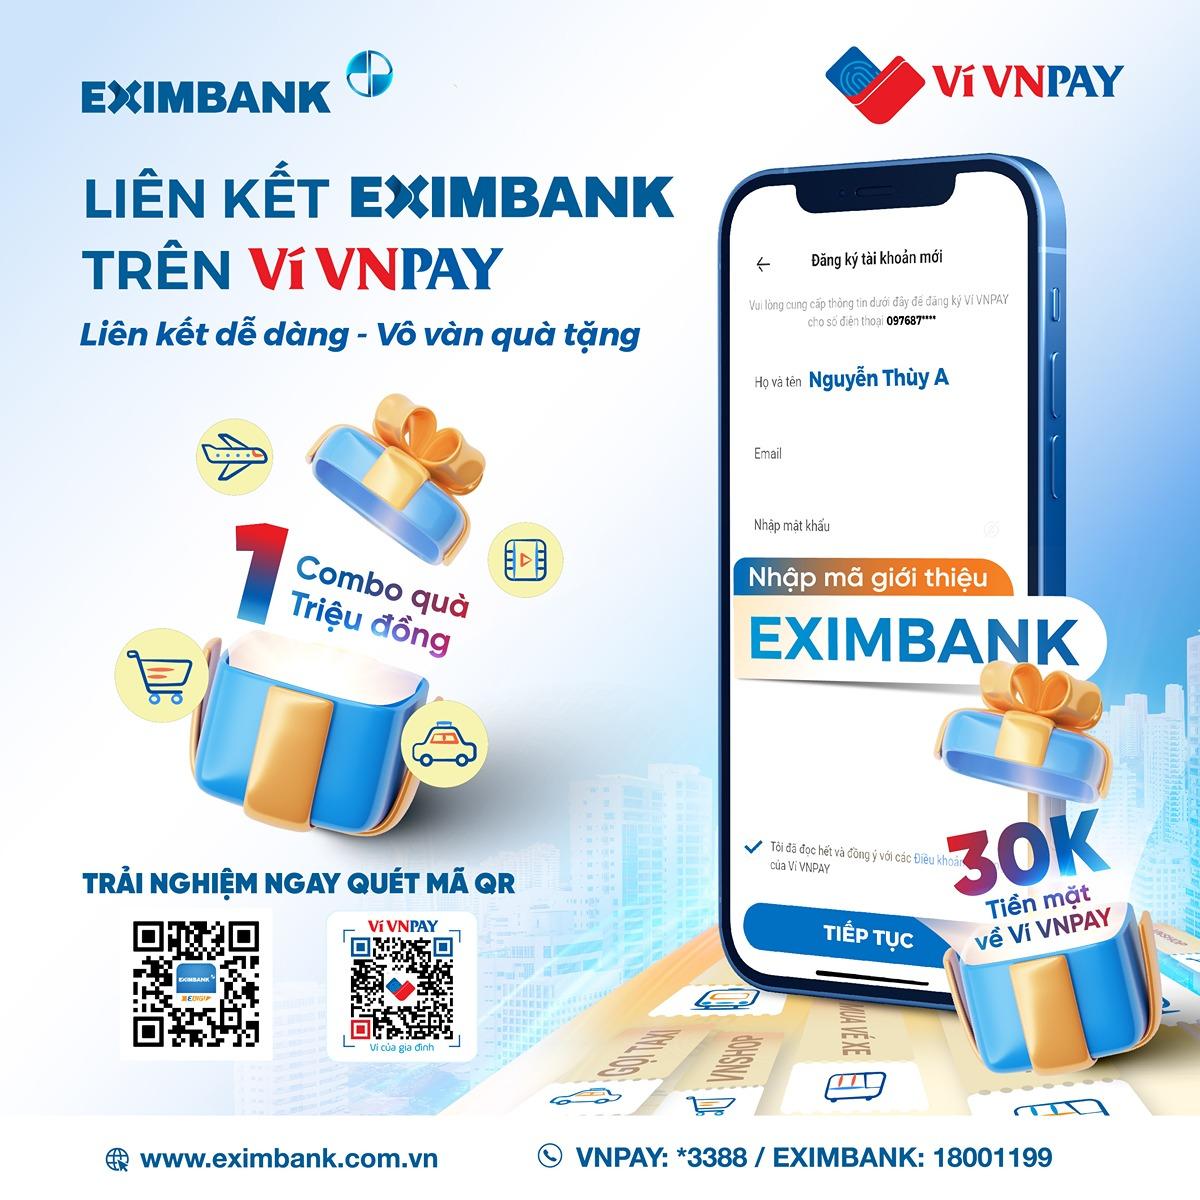 Liên kết Eximbank với ví VNPAY, bạn mới nhận ngay loạt ưu đãi hấp dẫn